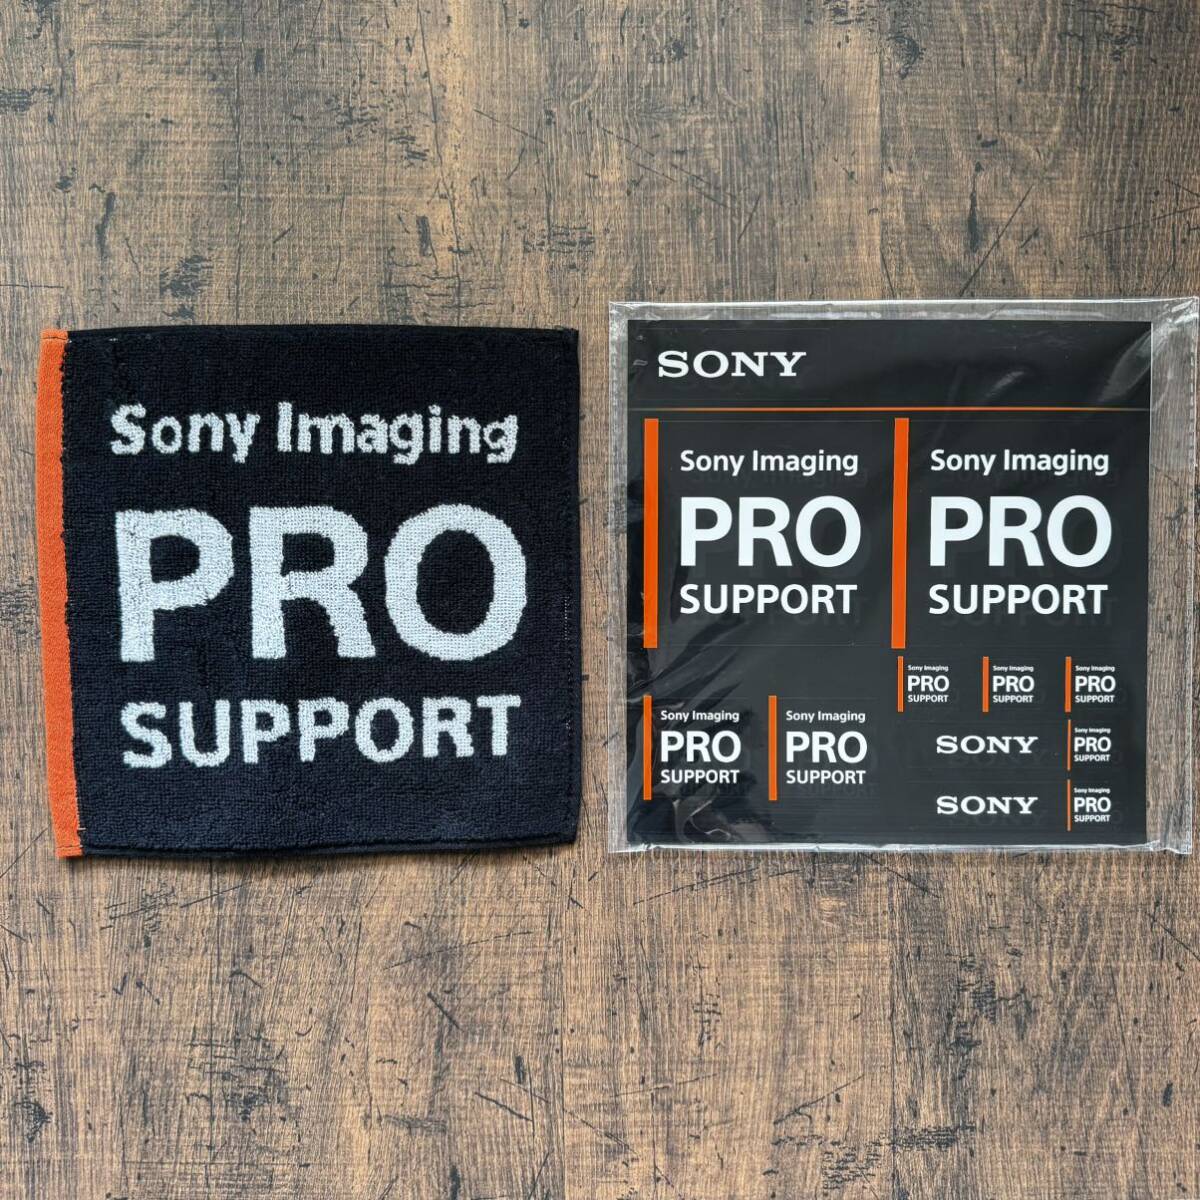 SONY ソニー プロサポート Pro support 非売品 ステッカー ミニタオル セット 送料無料の画像1